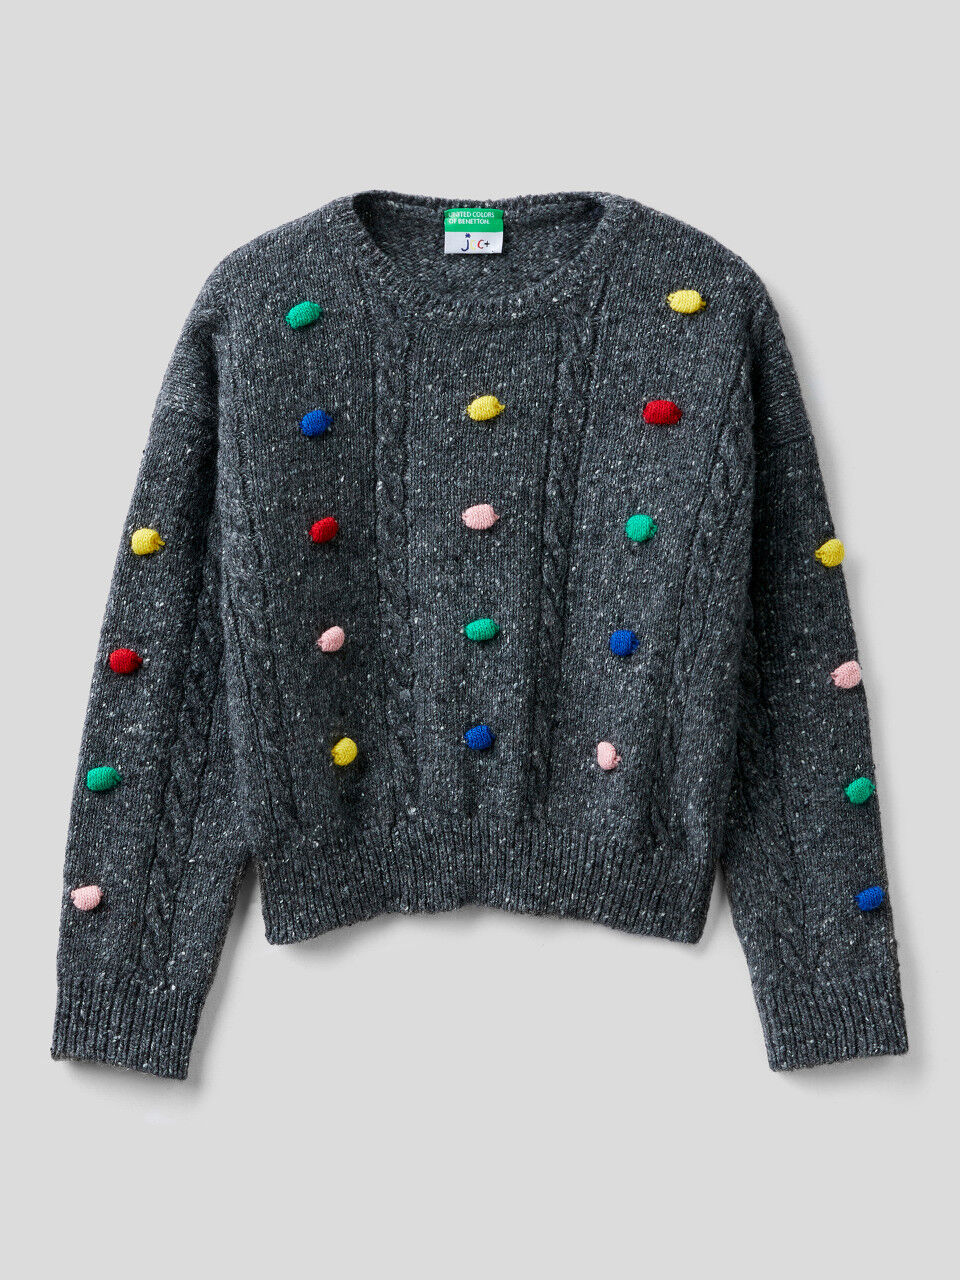 JCCxUCB sweater with pom pom